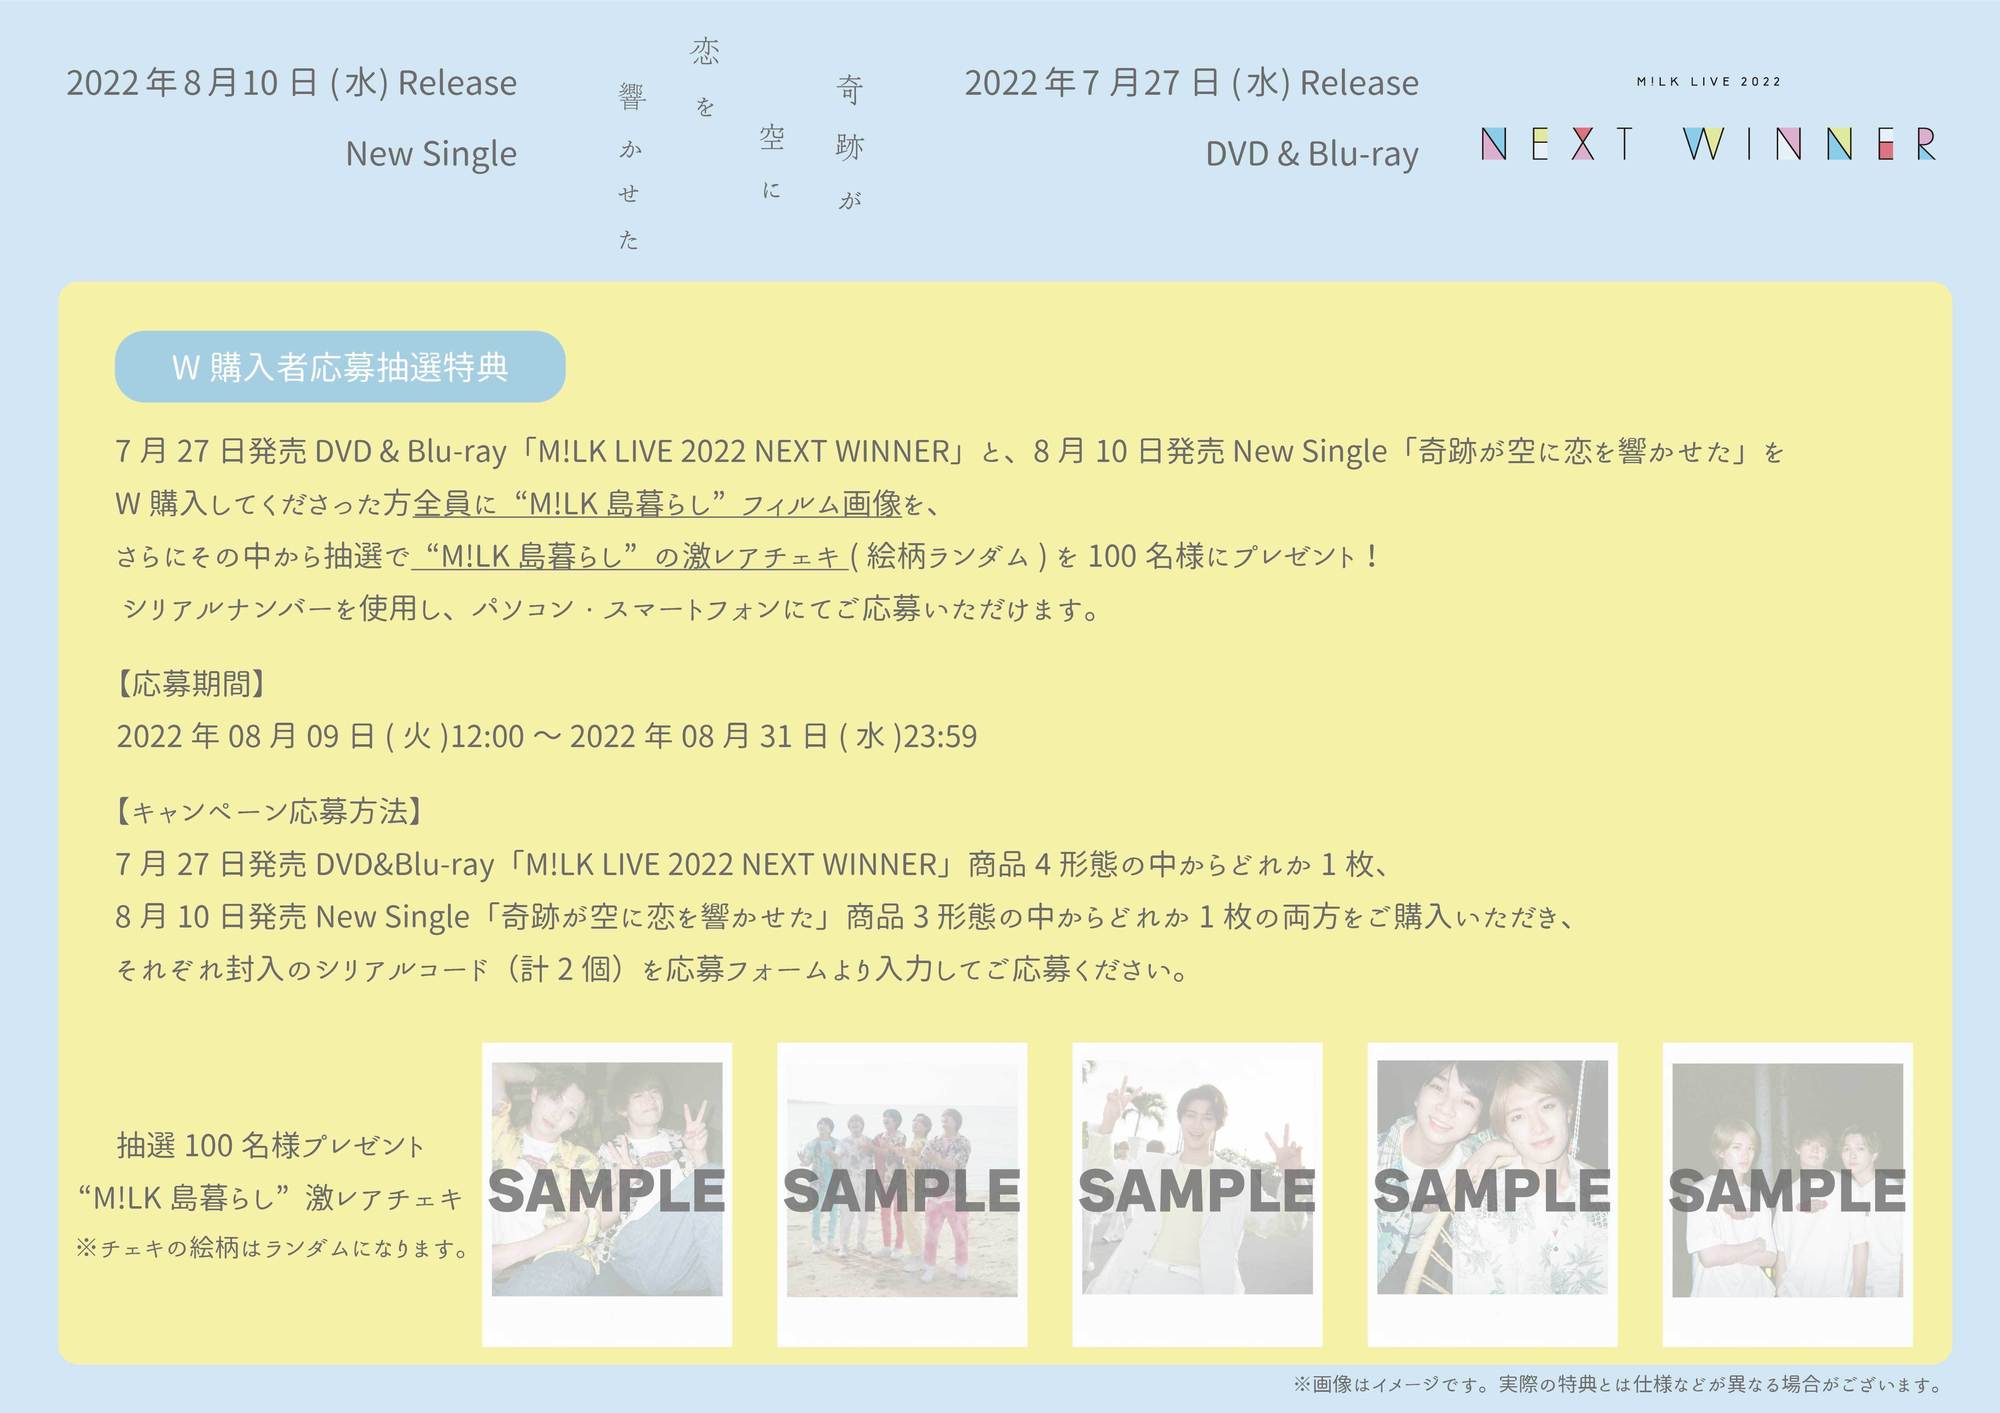 7/27(水)発売 DVD & Blu-ray「M!LK LIVE 2022 NEXT WINNER」& 8/10(水